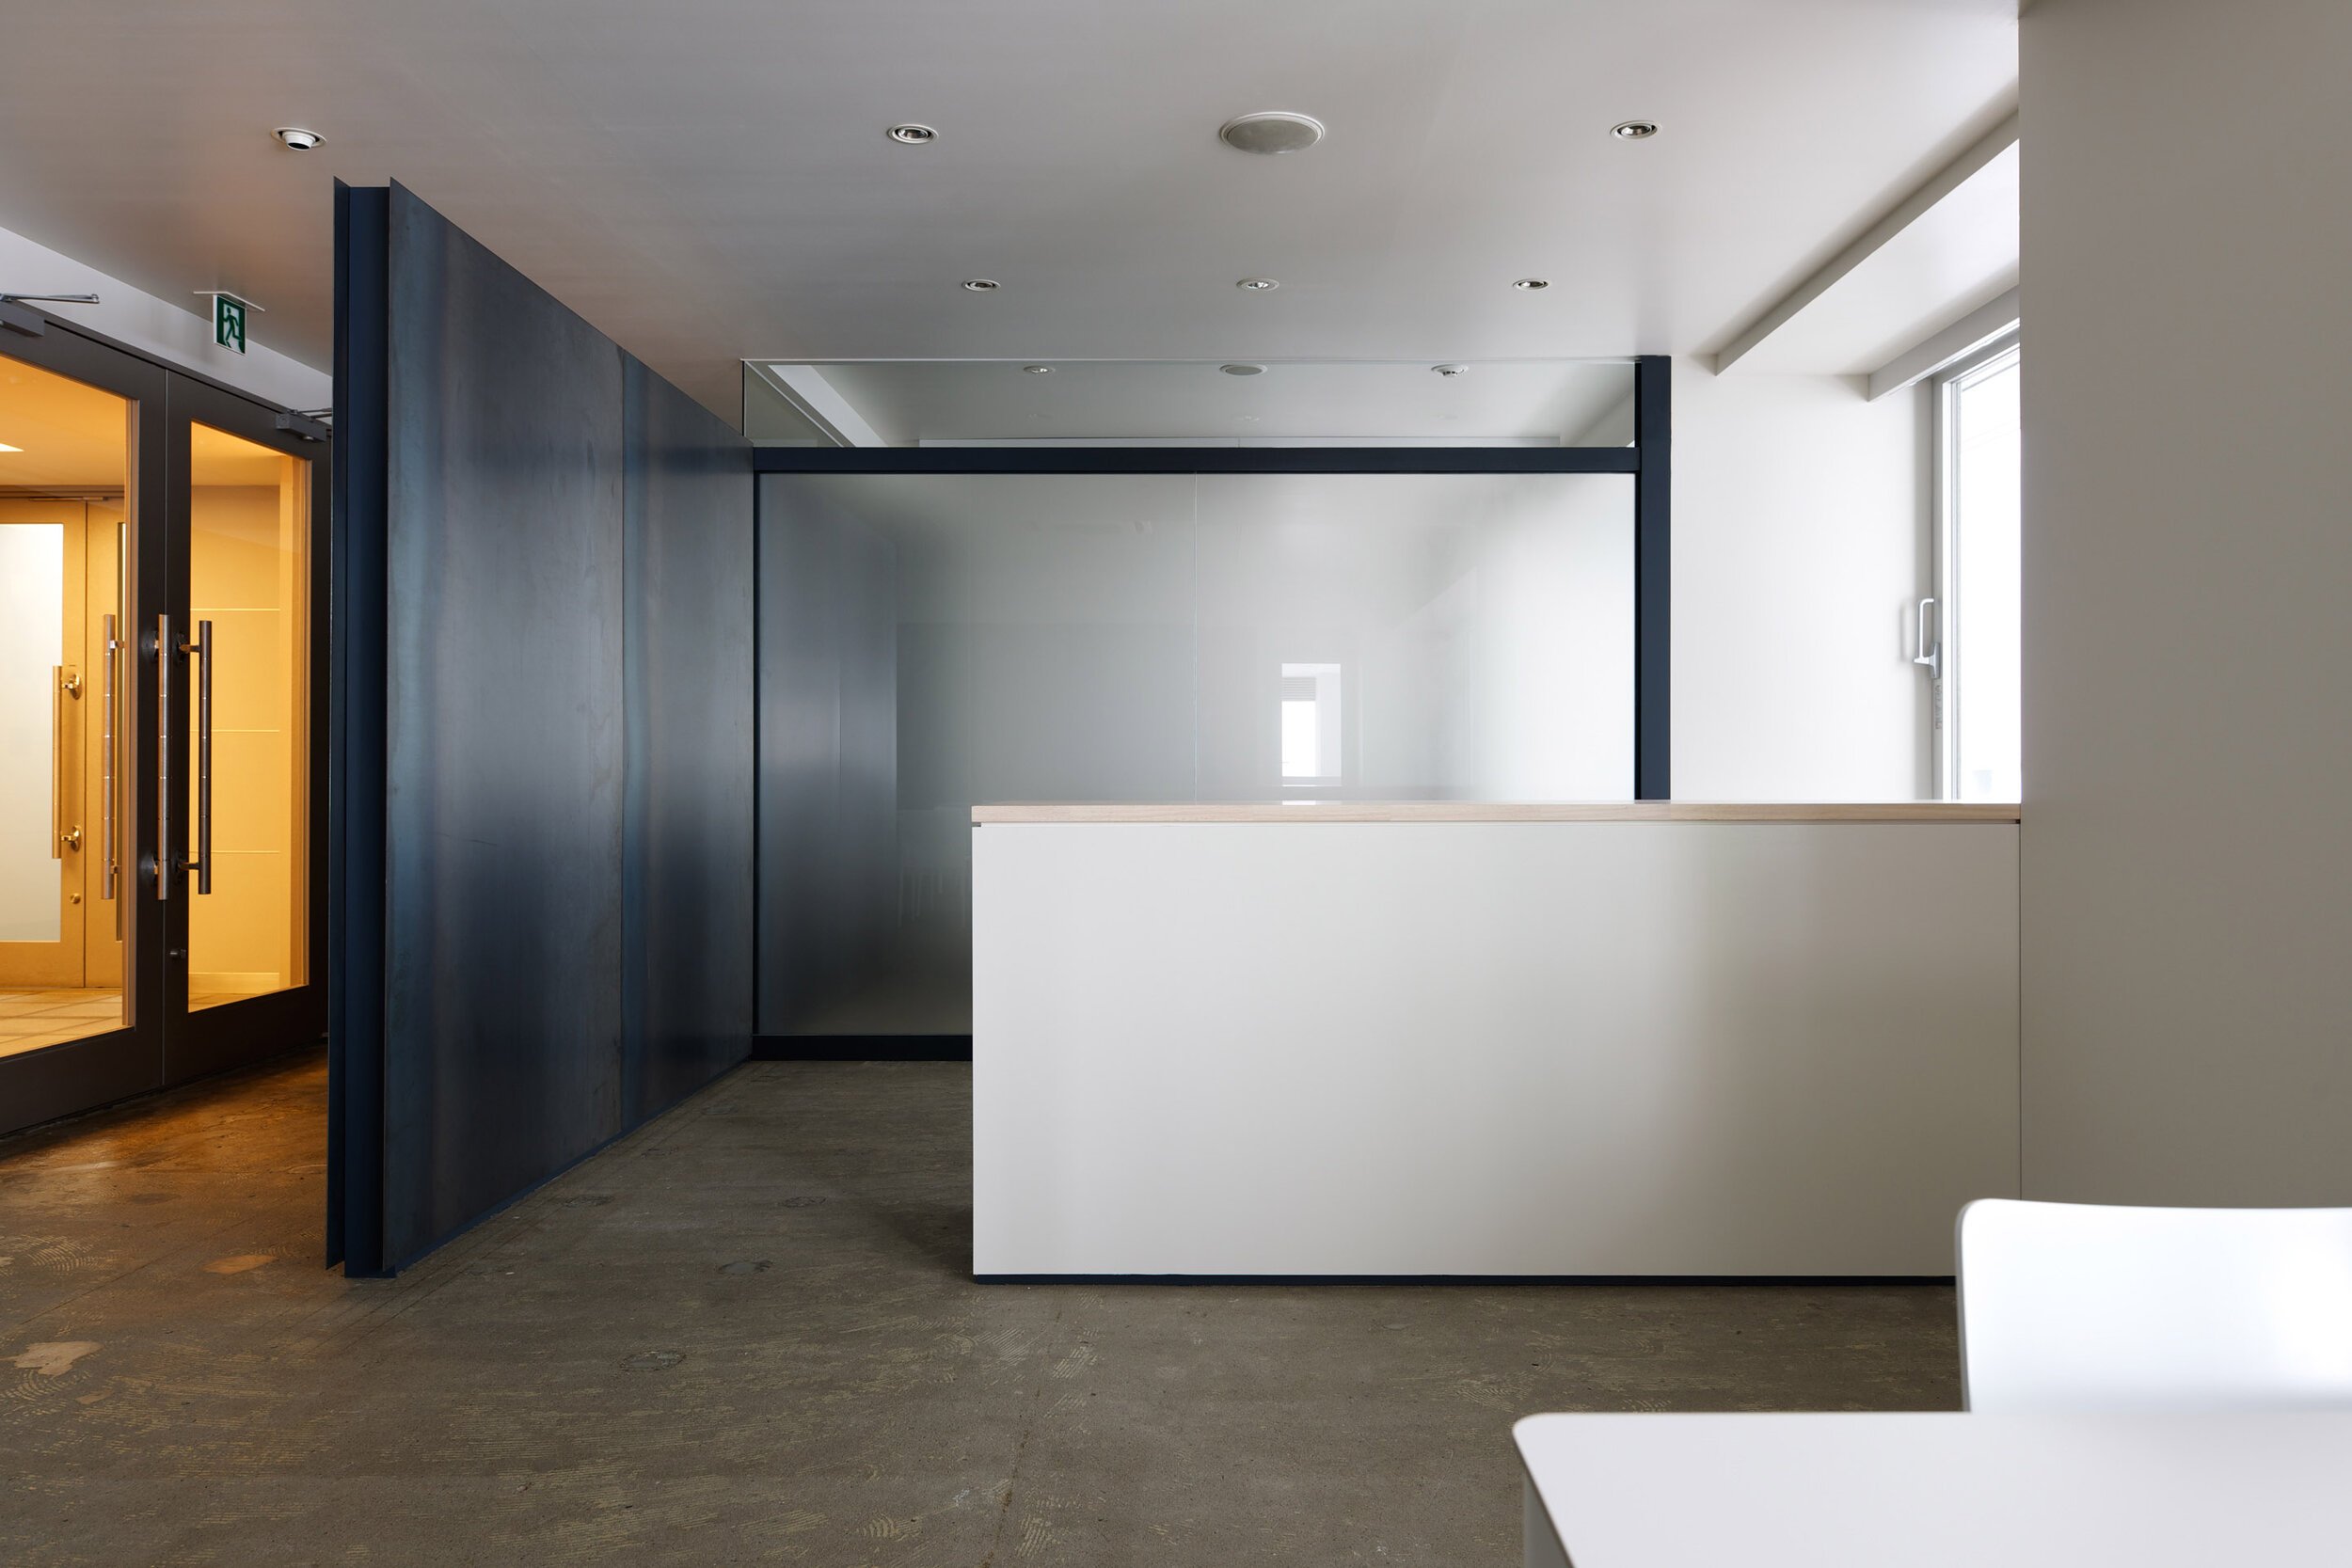 tomoyuki-sakakida-shanon-office-interior-design-tokyo-japan-idreit-07s.jpg